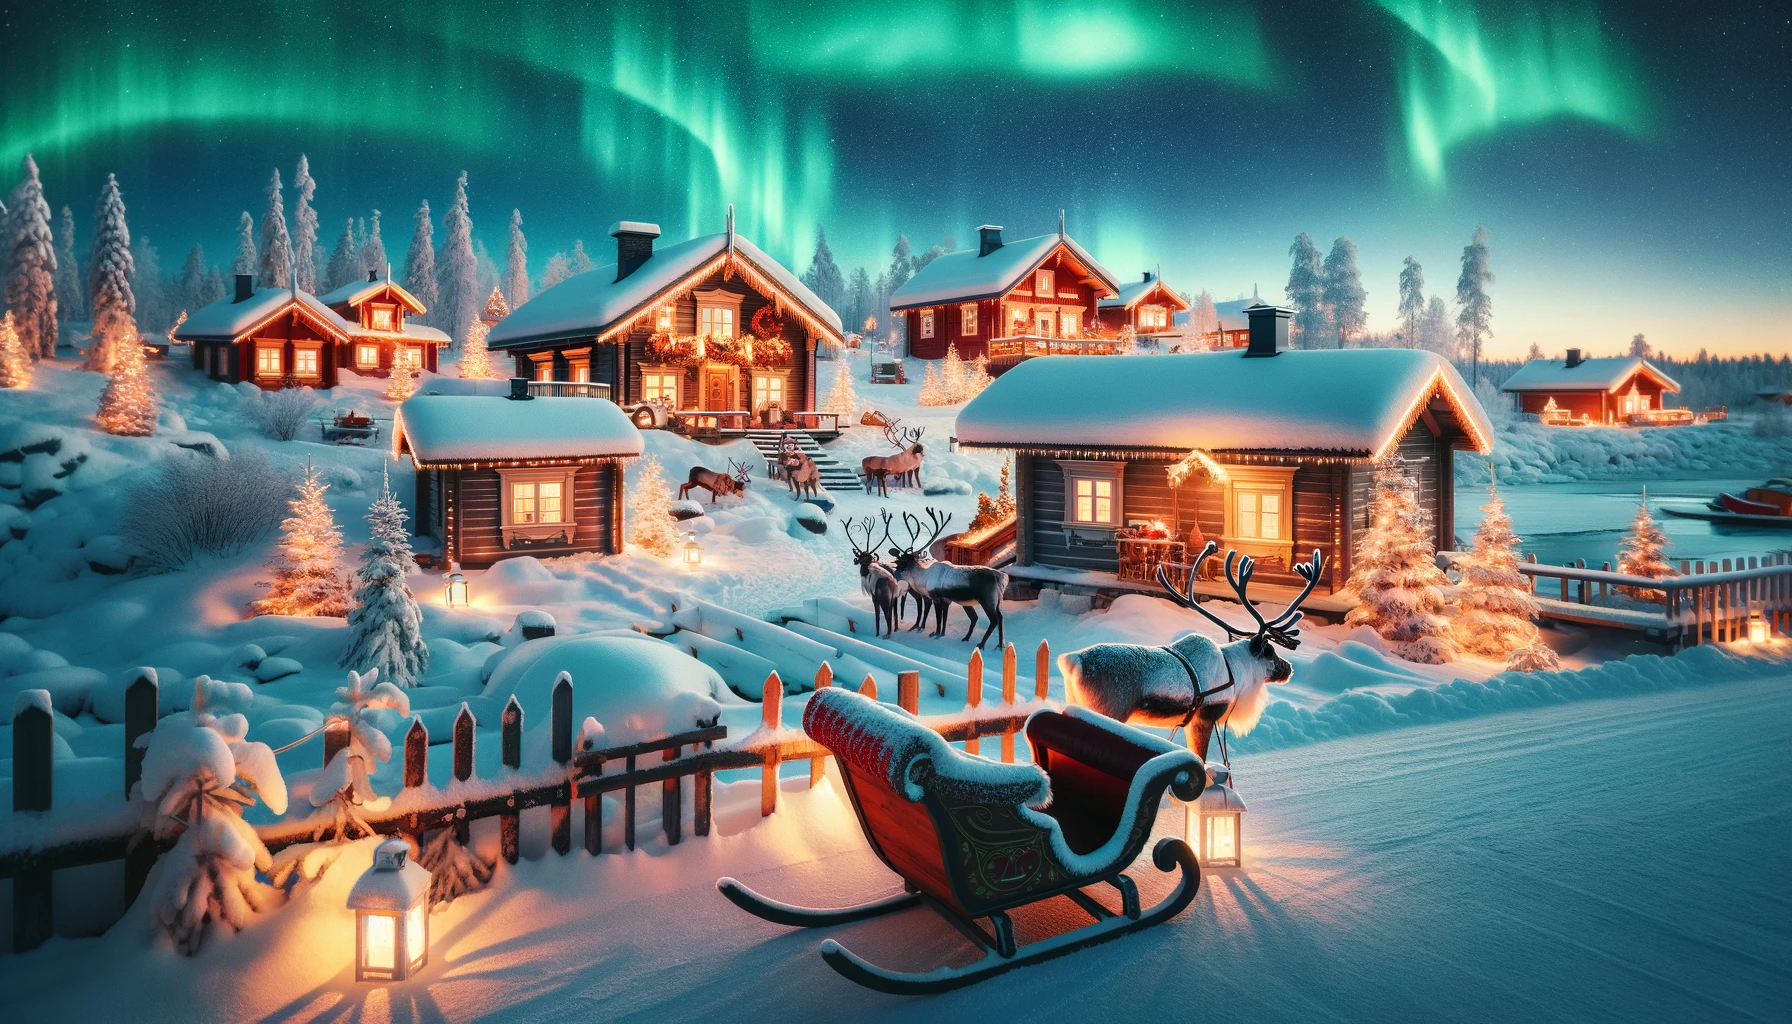 Zimowy krajobraz Rovaniemi z Wioską Świętego Mikołaja, drewnianymi chatami w śniegu, saniami z reniferami i zorzą polarną na nocnym niebie.